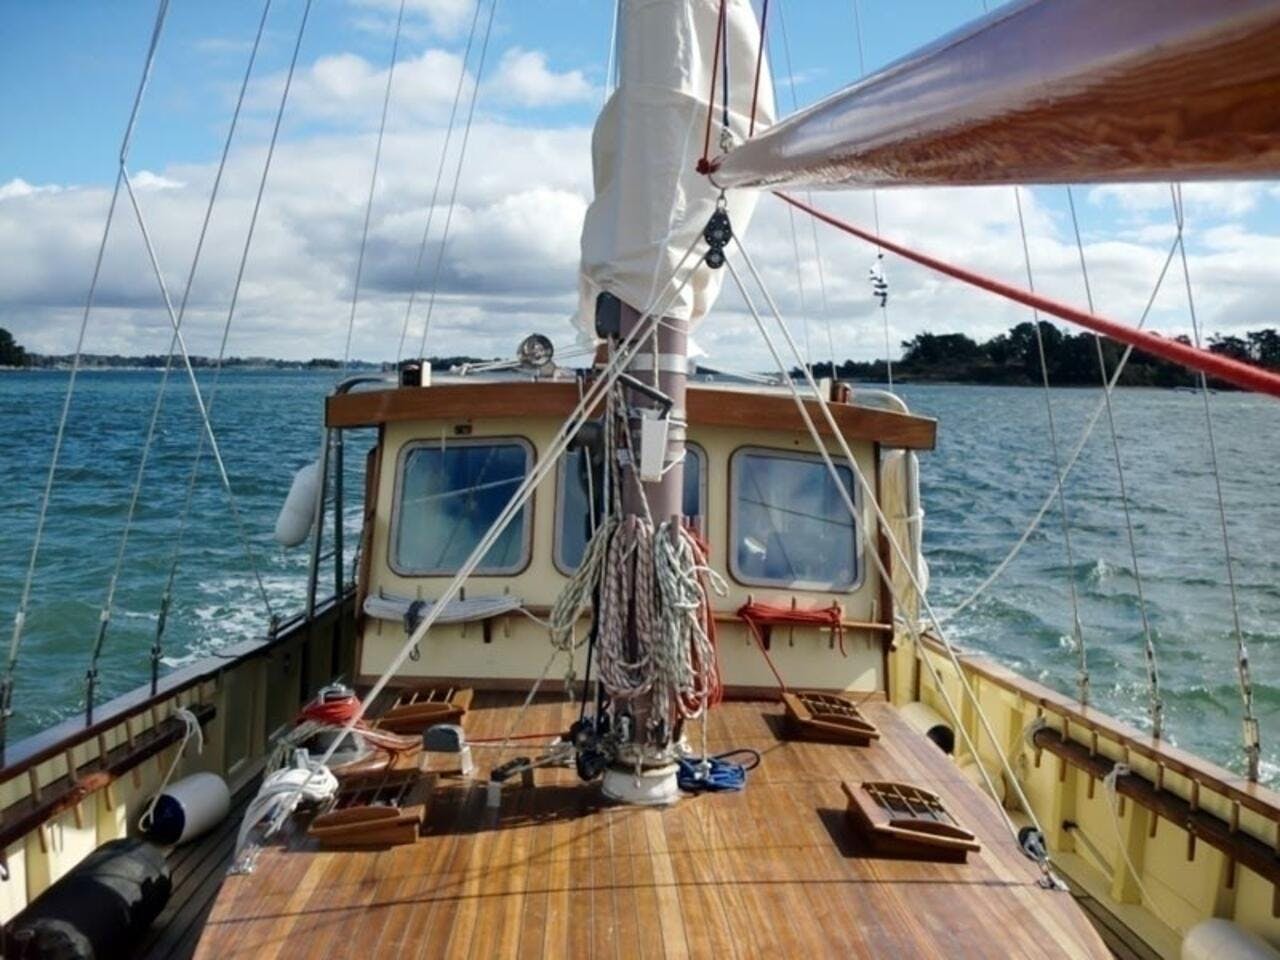 Book Le Petit Poucet Wooden yacht for bareboat charter in San Blas, Corazon de Jesus, San Blas, Panama with TripYacht!, picture 2